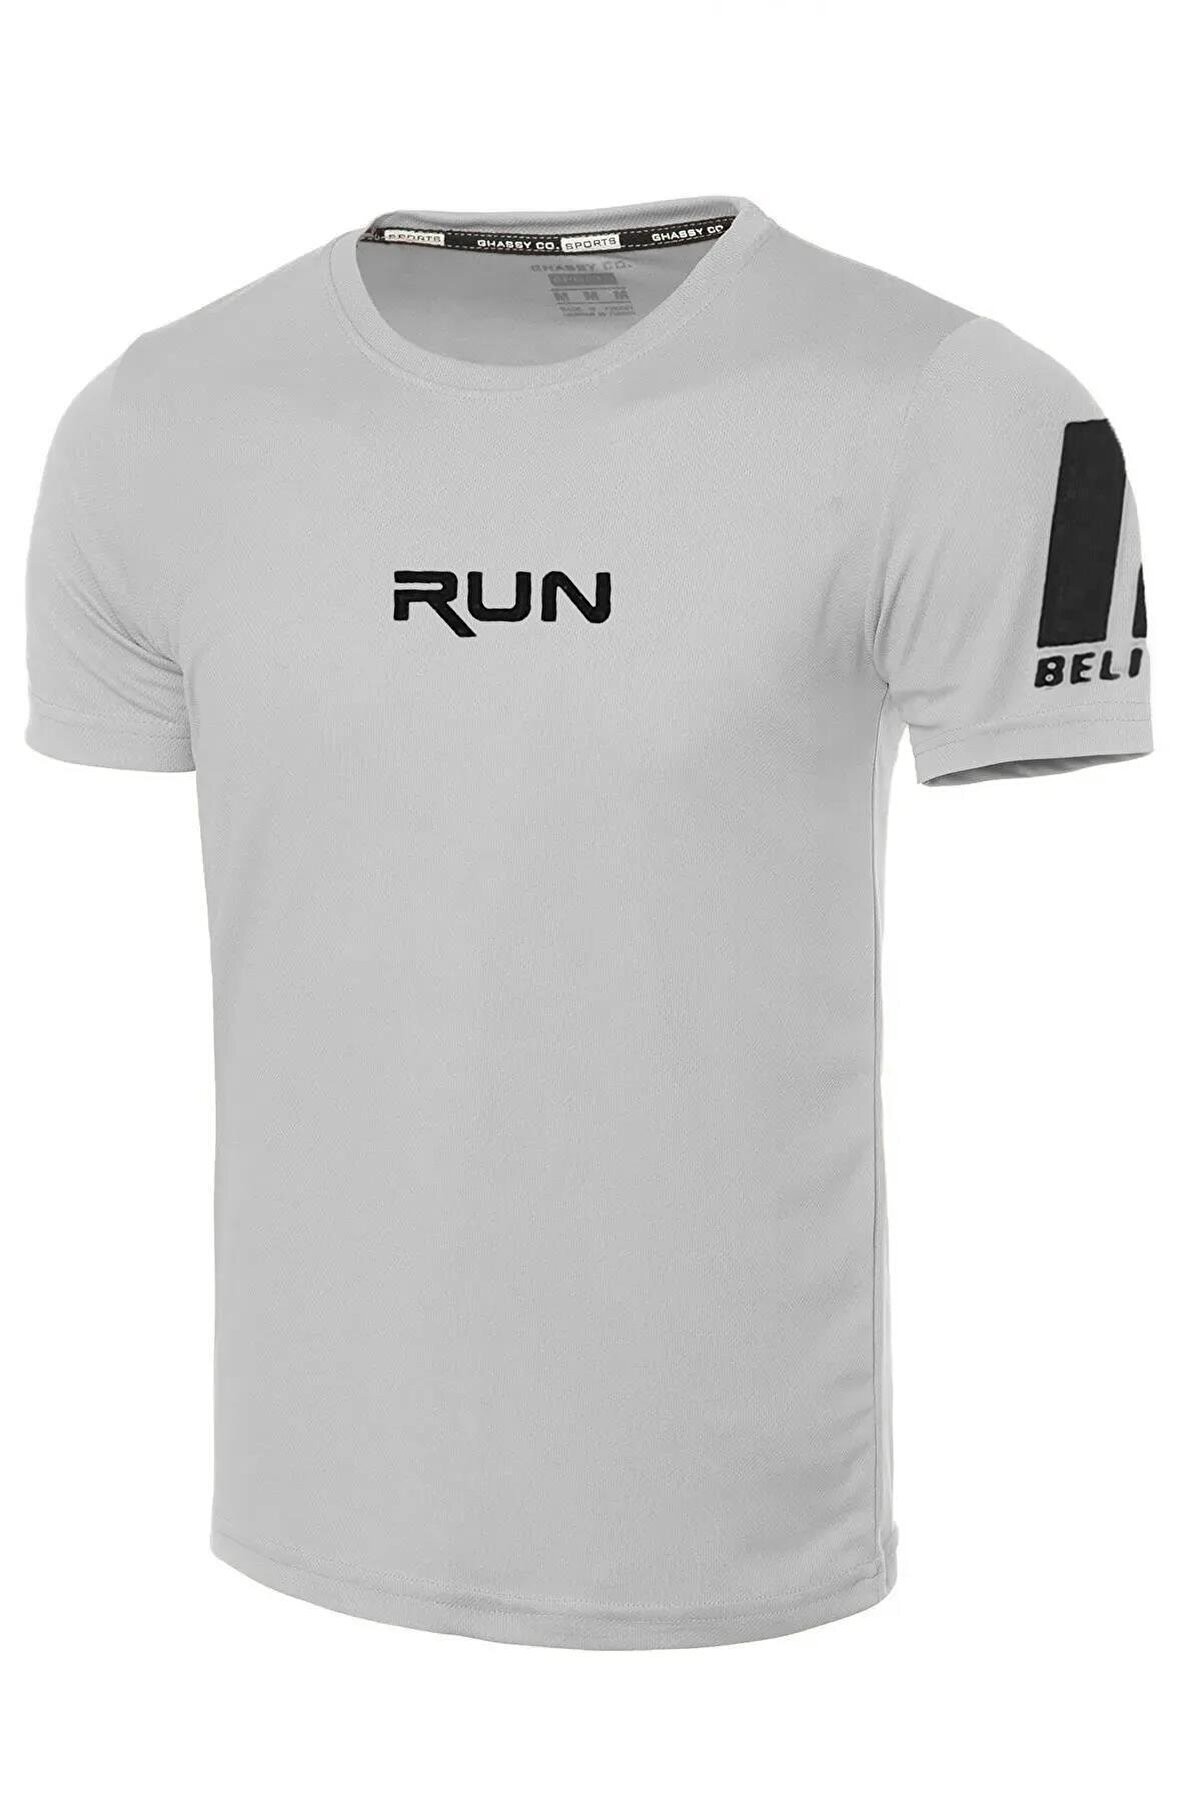 Ghassy Co Ghassy Co. Erkek Nem Emici Hızlı Kuruma Performans Running Spor T-shirt - Açık Gri